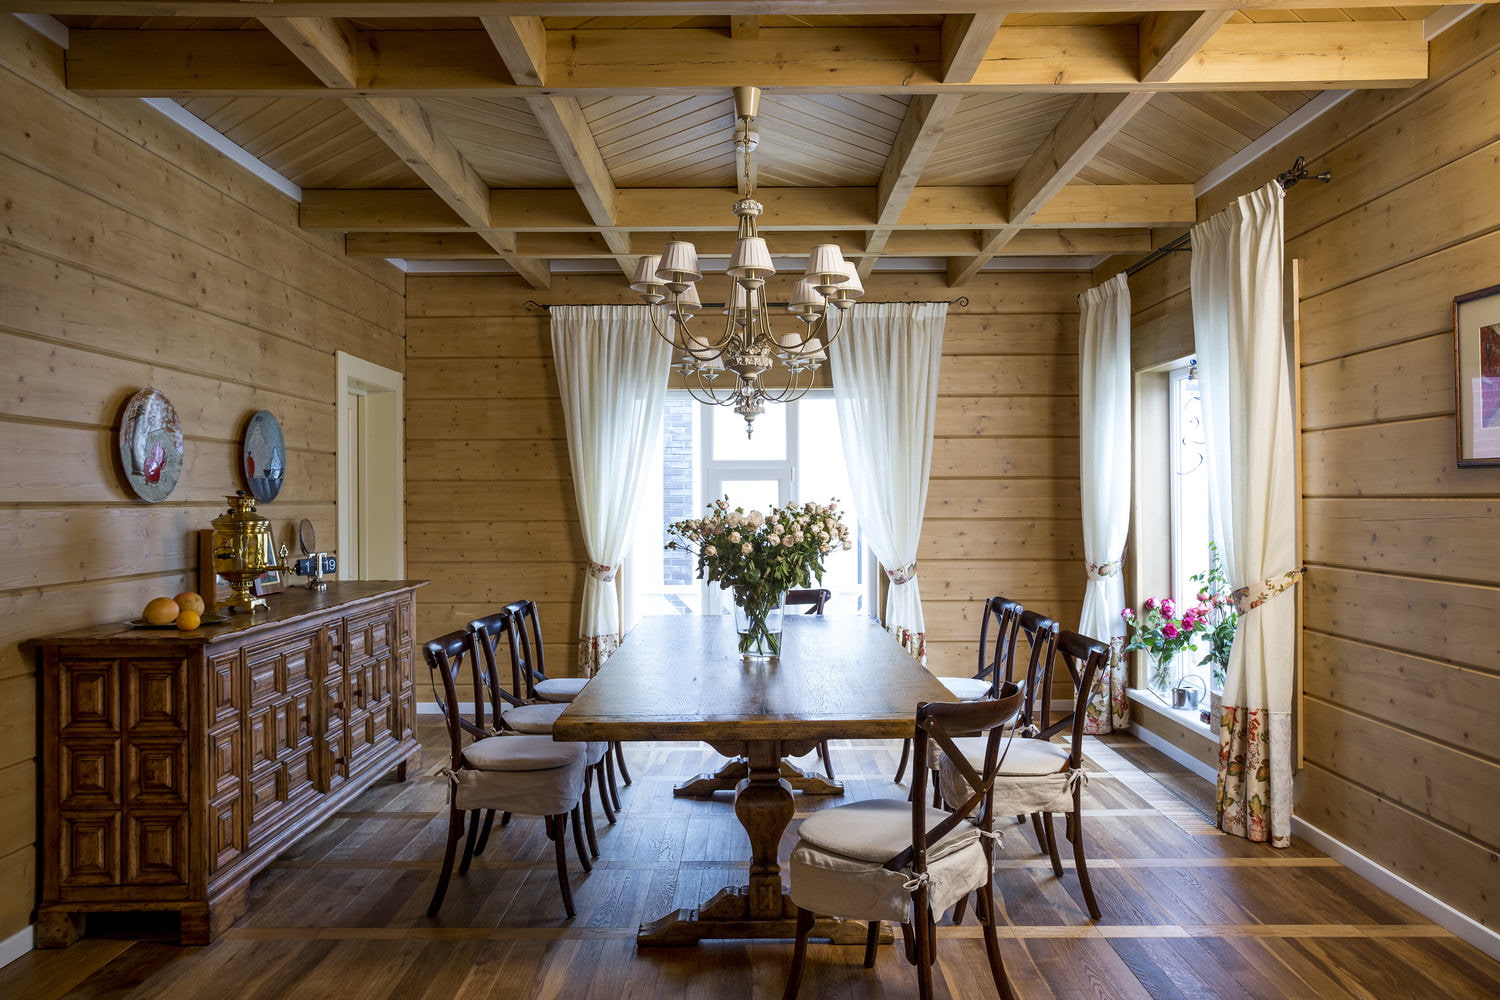 Medicine gown Them Cum să acoperiți tavanul într-o casă din lemn? - 8 idei frumoase și practice